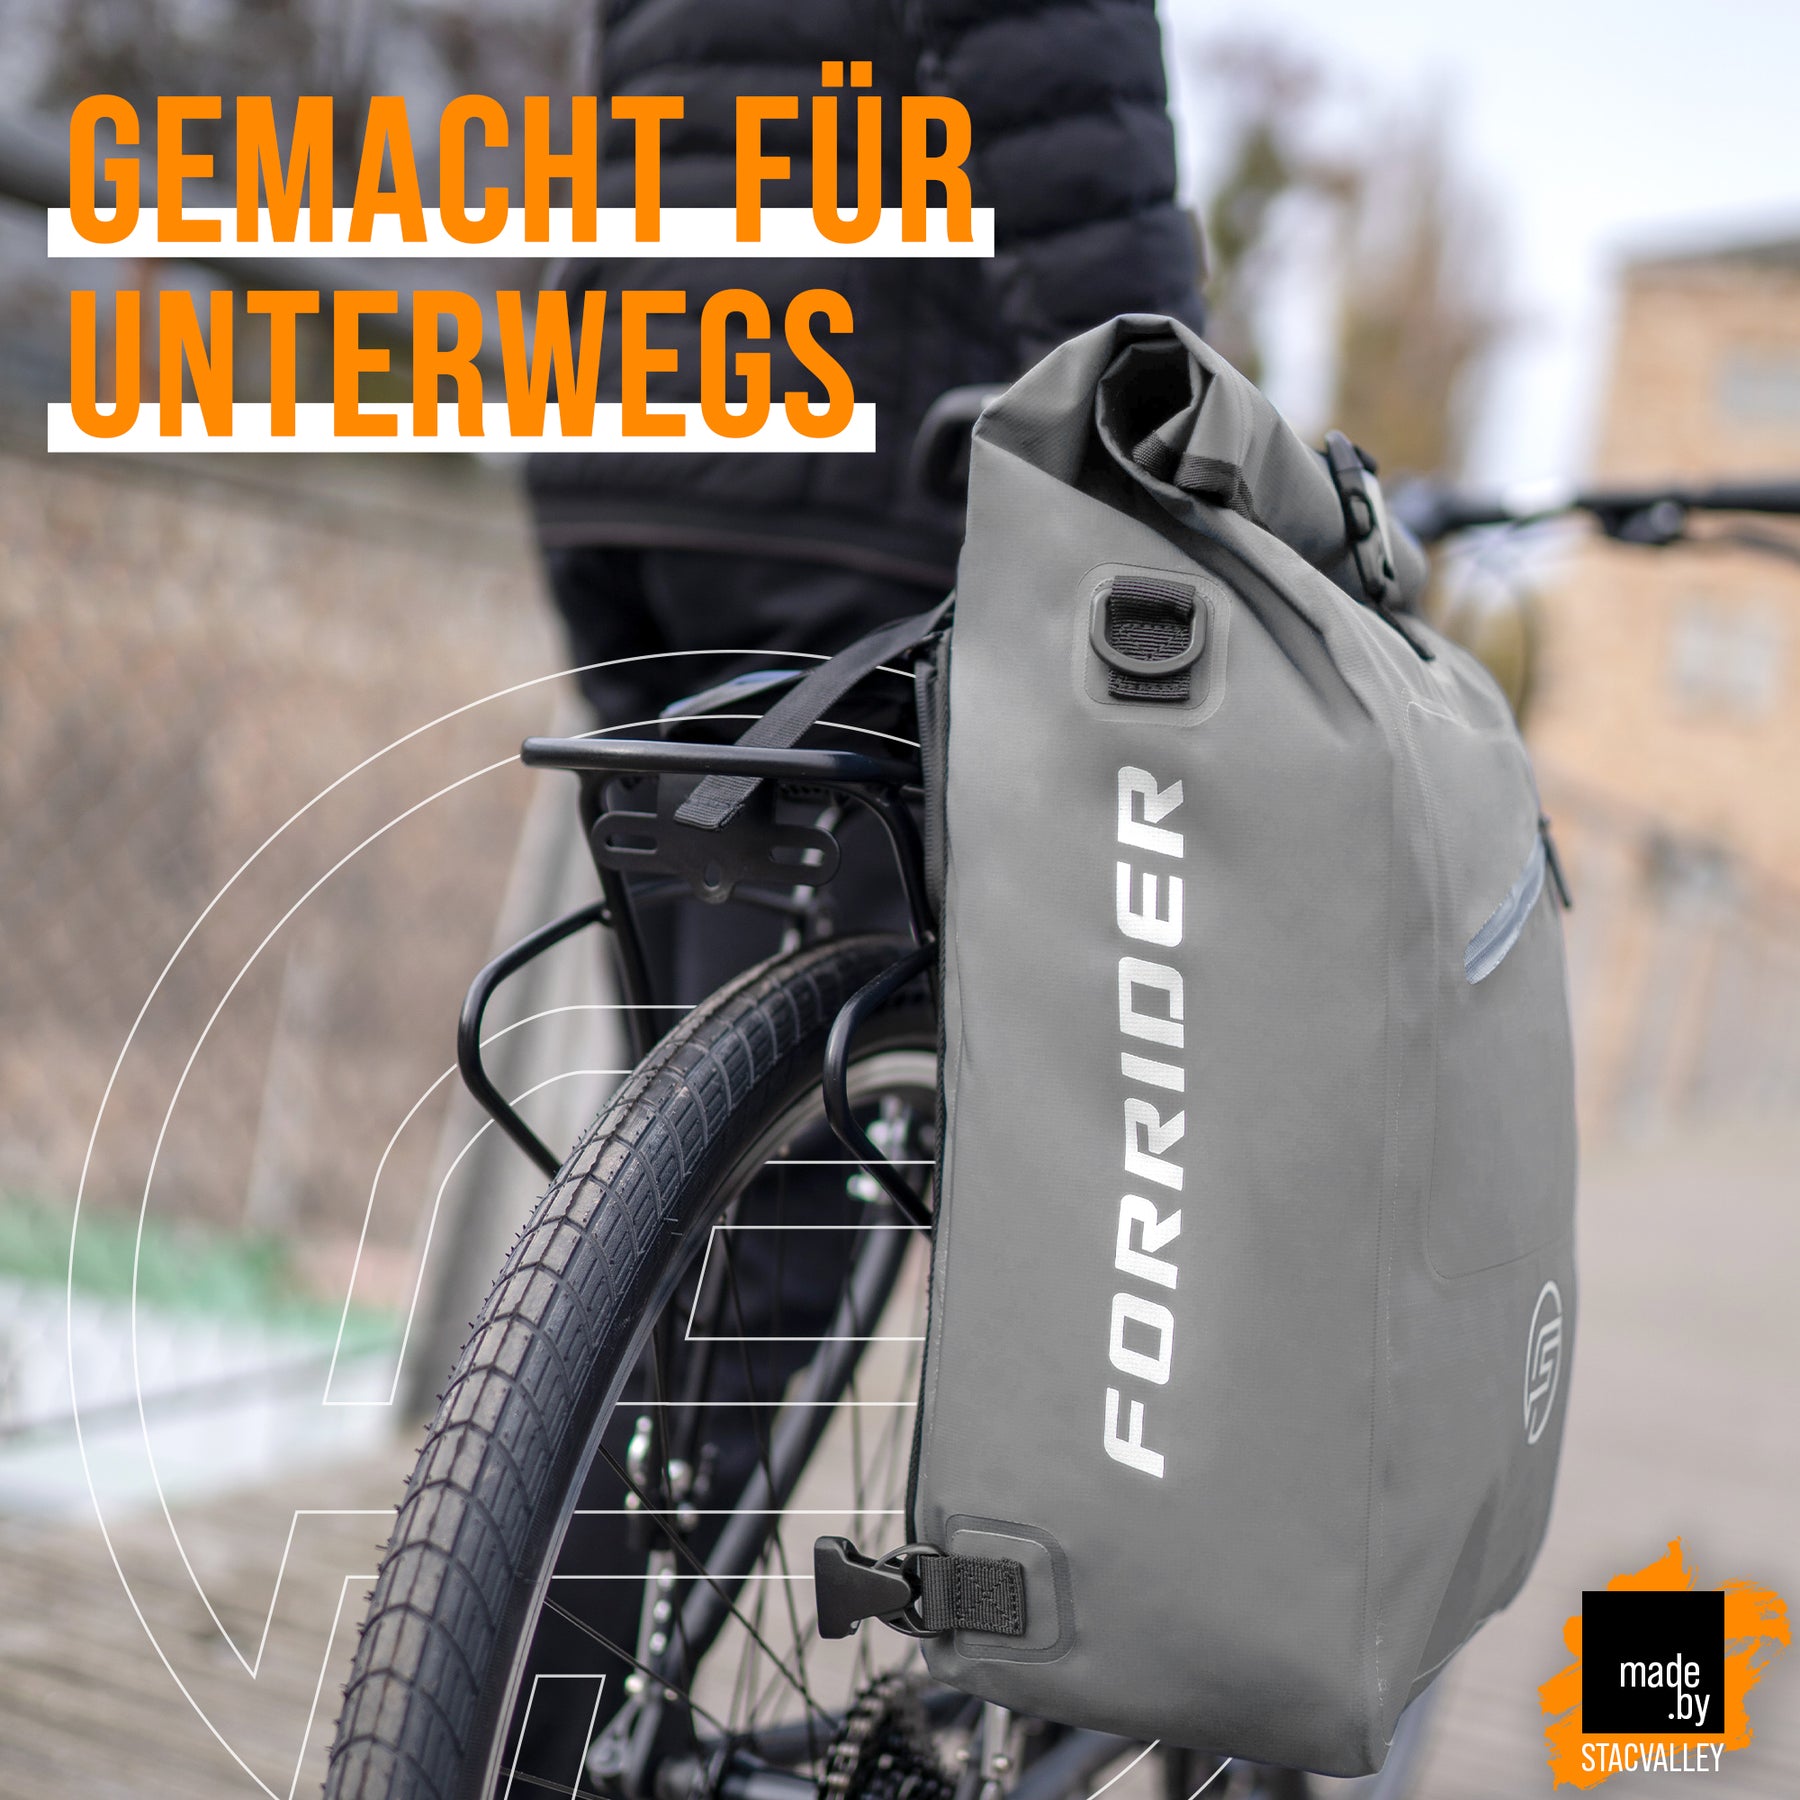 3in1 Urban Explorer Fahrradtasche - auch als Rucksack geeignet!